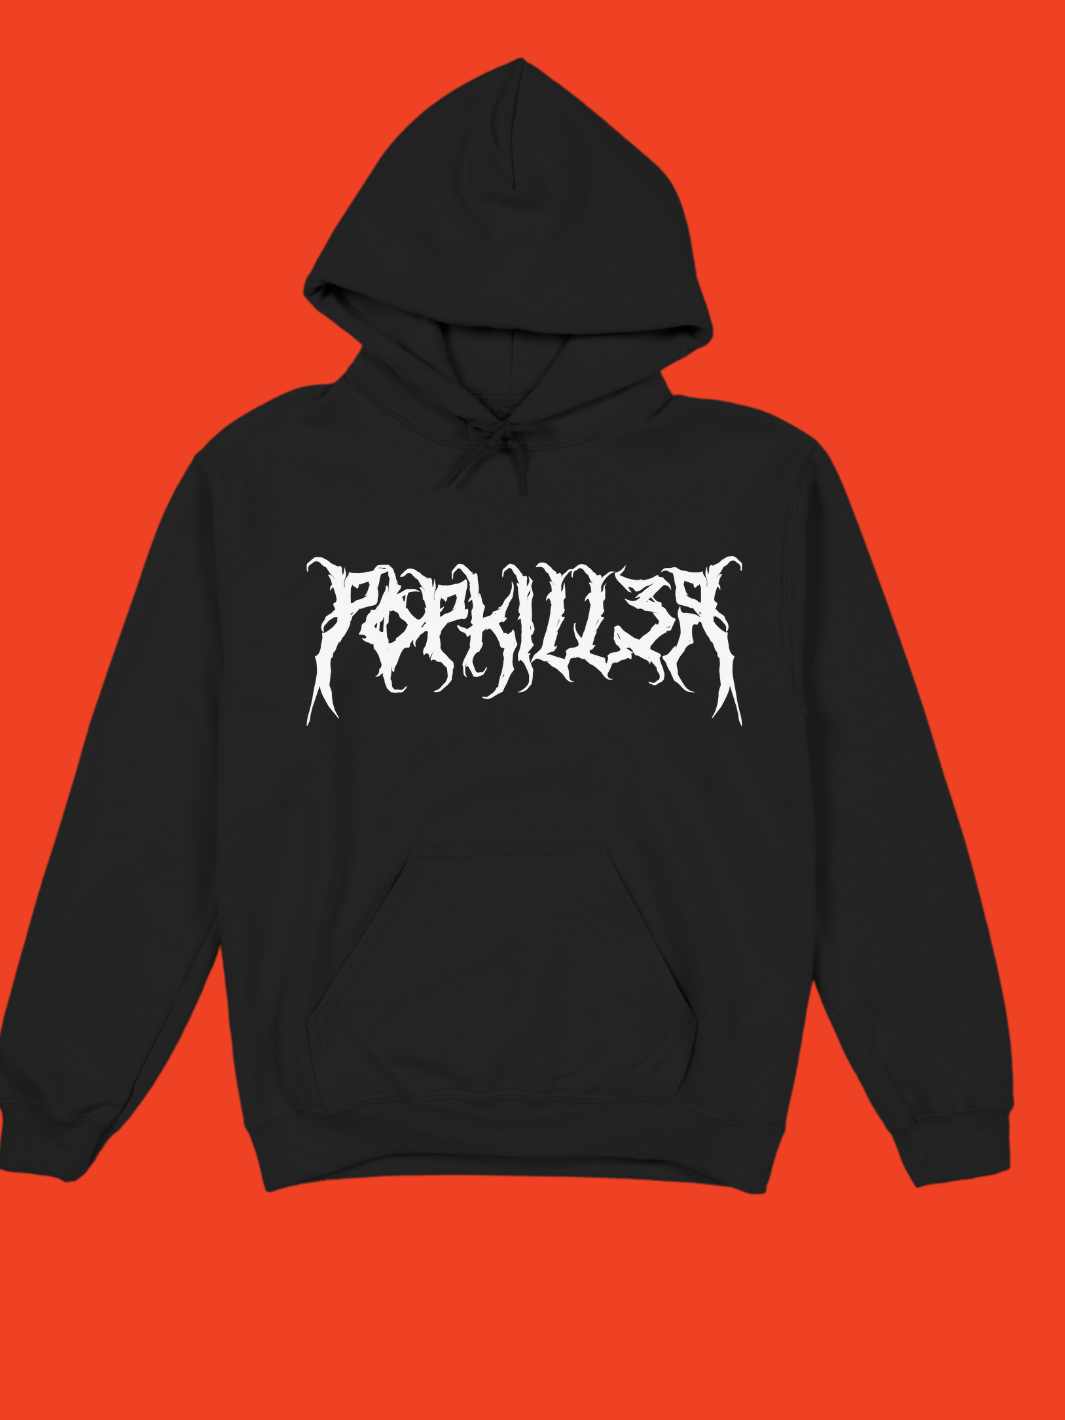 Death Metal Popkiller Pullover Hoodie